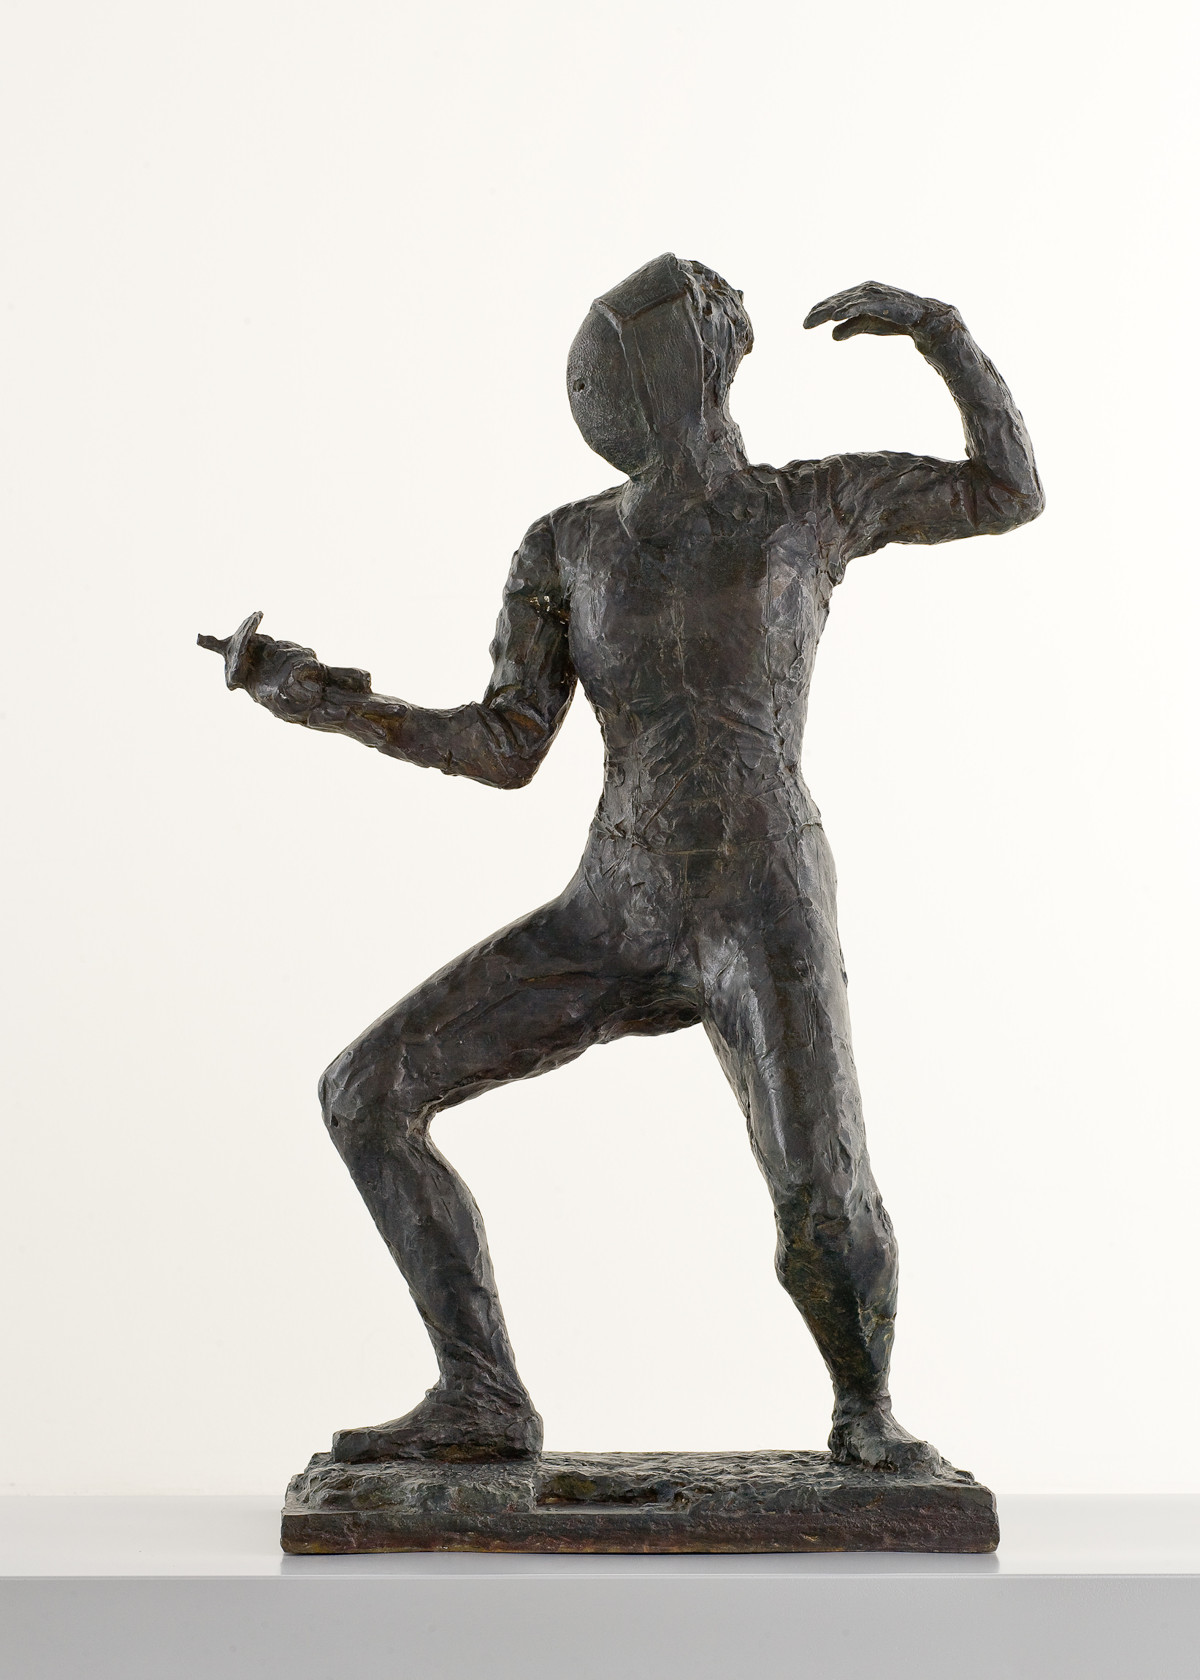 Sculpture en bronze de Germaine Richier représentant une escrimeuse portant son masque